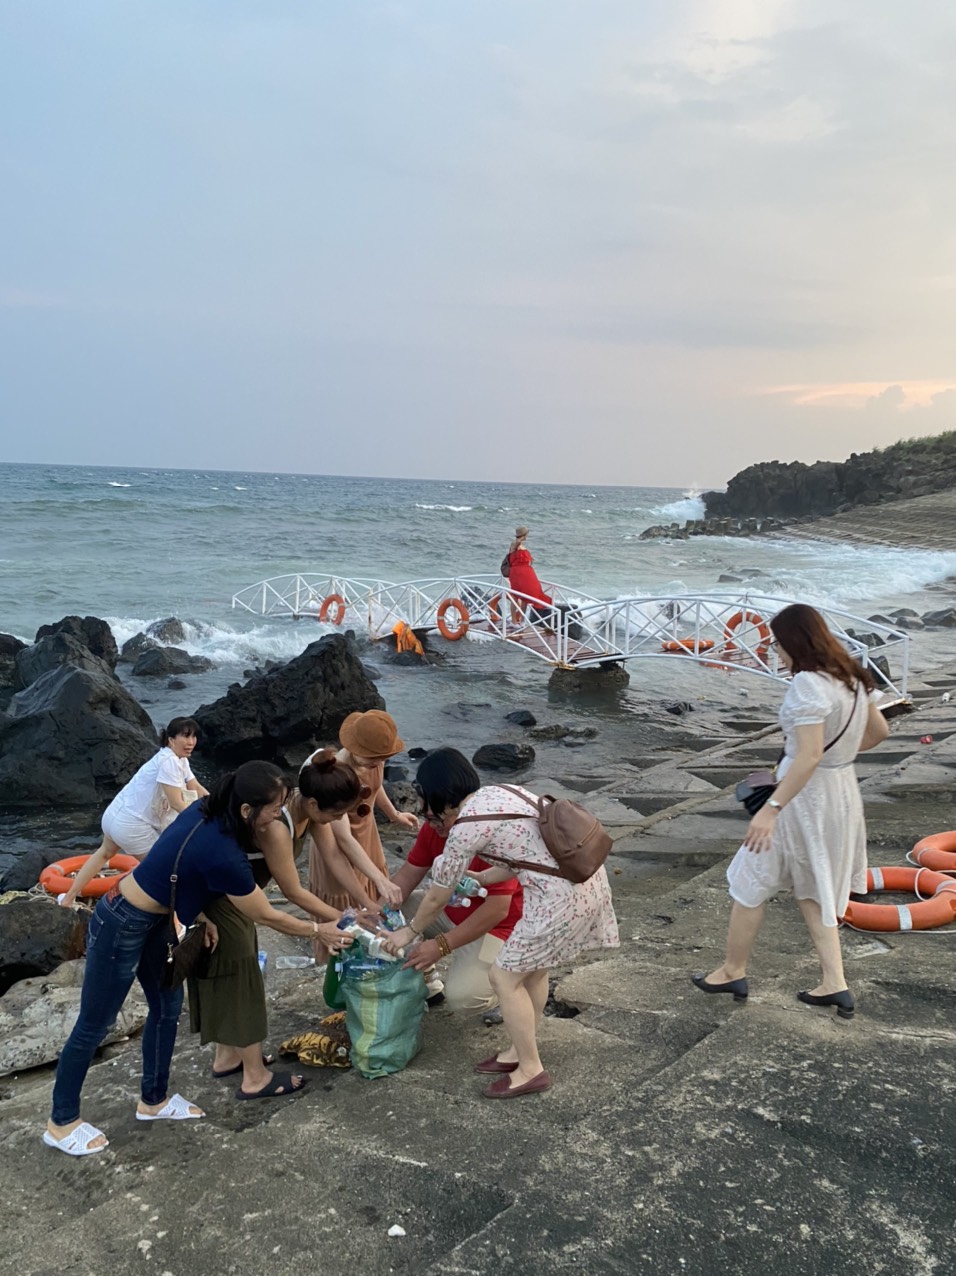 Doanh nghiệp du lịch tham gia nhặt rác, làm sạch bãi biển trên đảo Cồn Cỏ